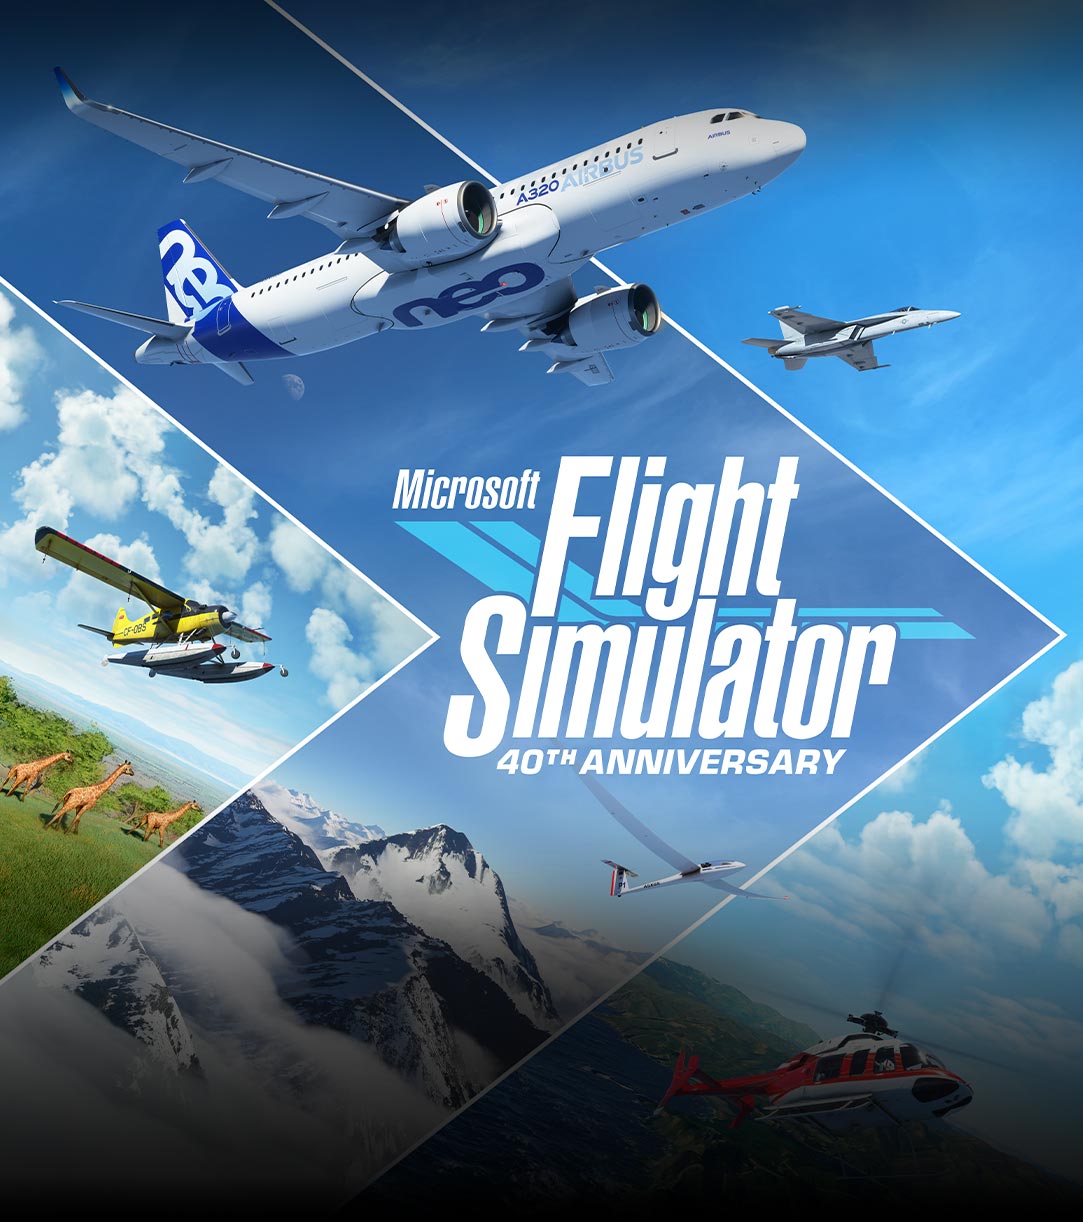 Логотип юбилейного издания Microsoft Flight Simulator к 40-летию серии, самолеты и пейзажи из различных частей мира.